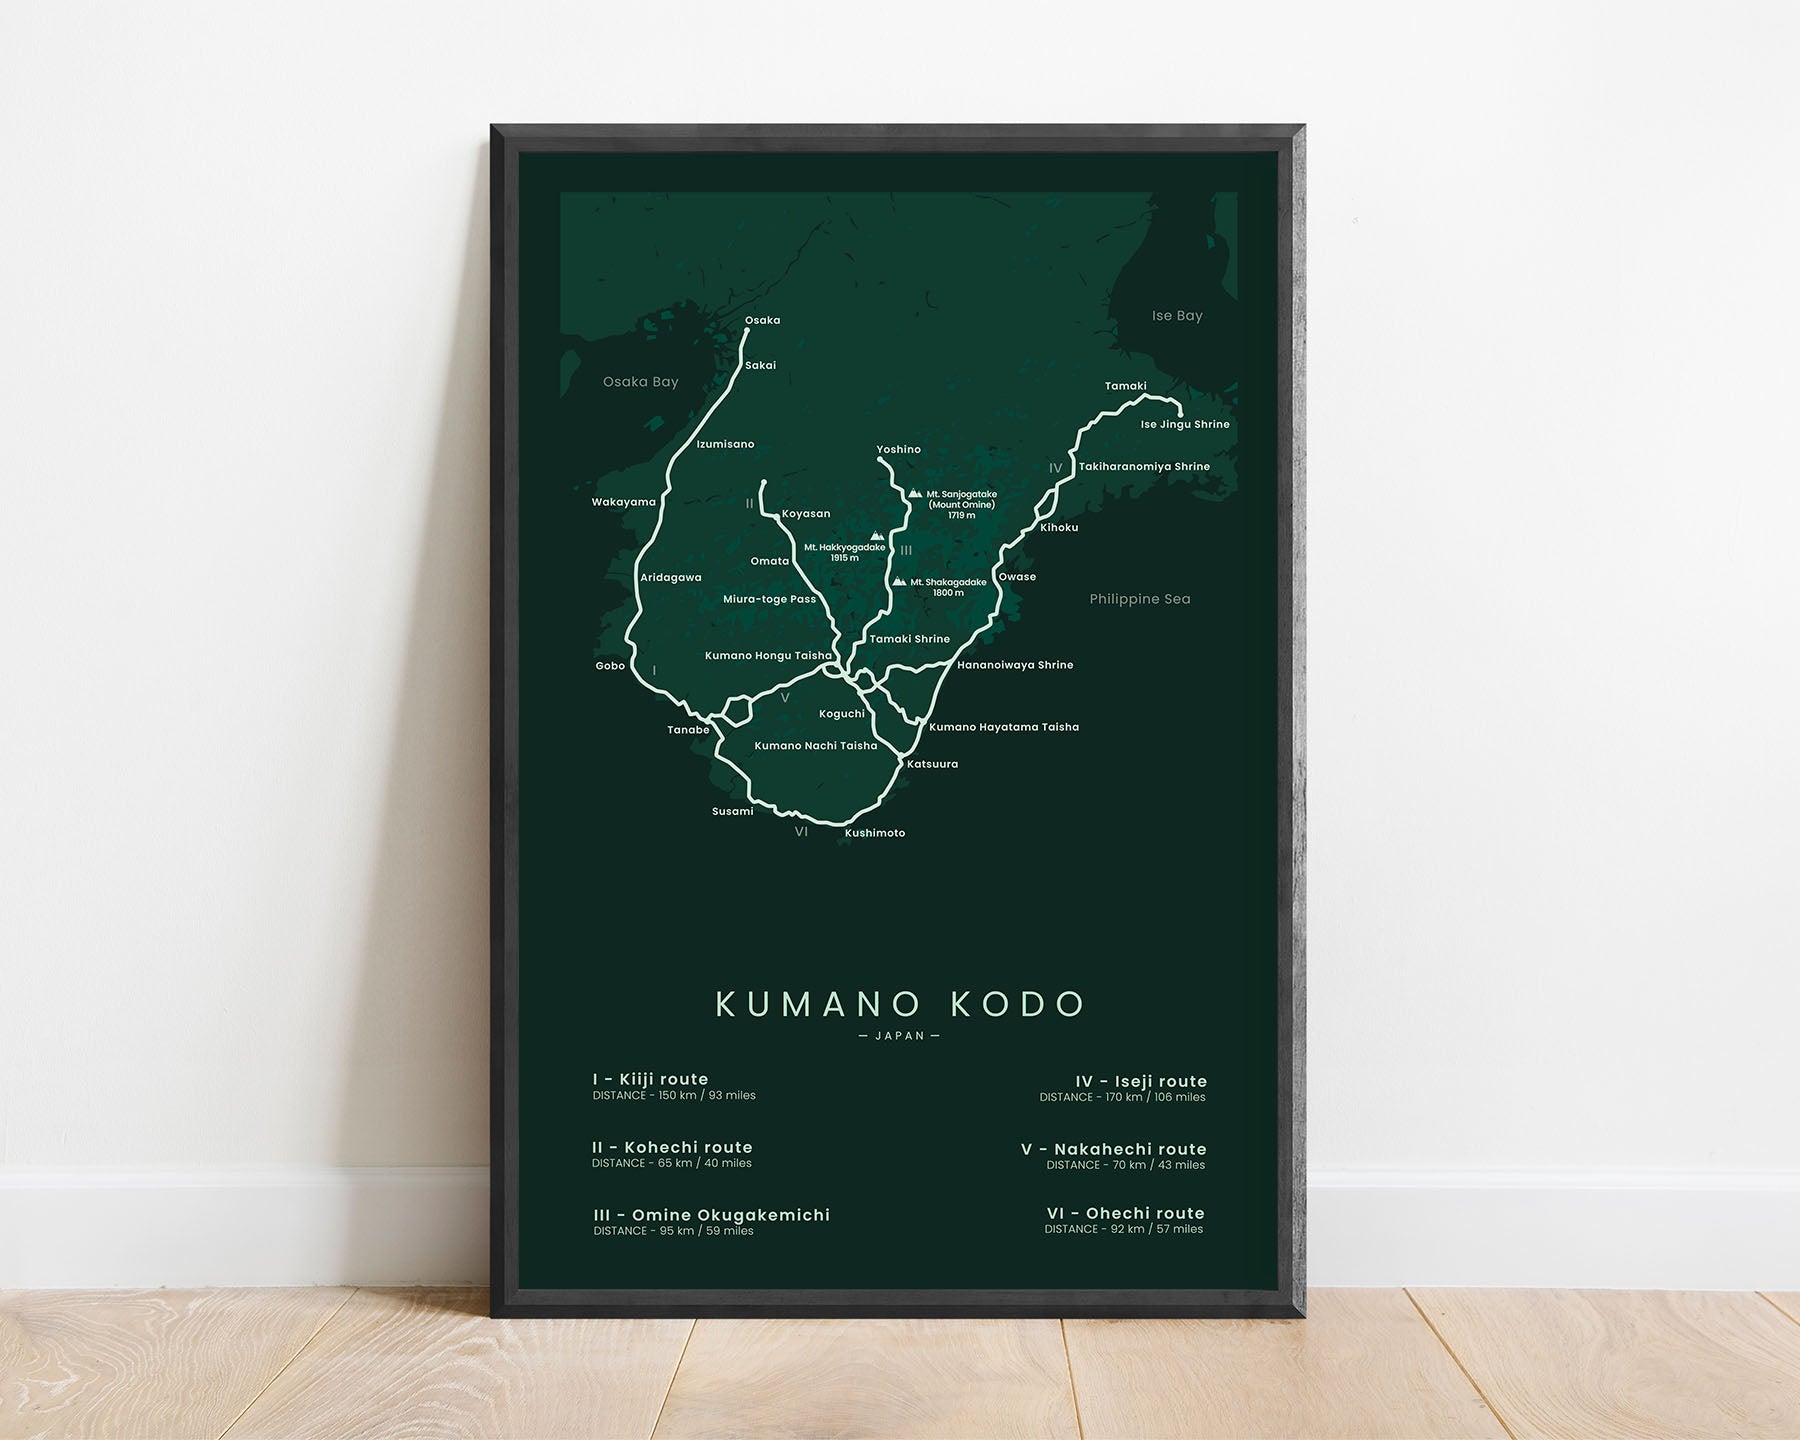 Kumano Kodo (Omine Okugakemichi) route art print with green background